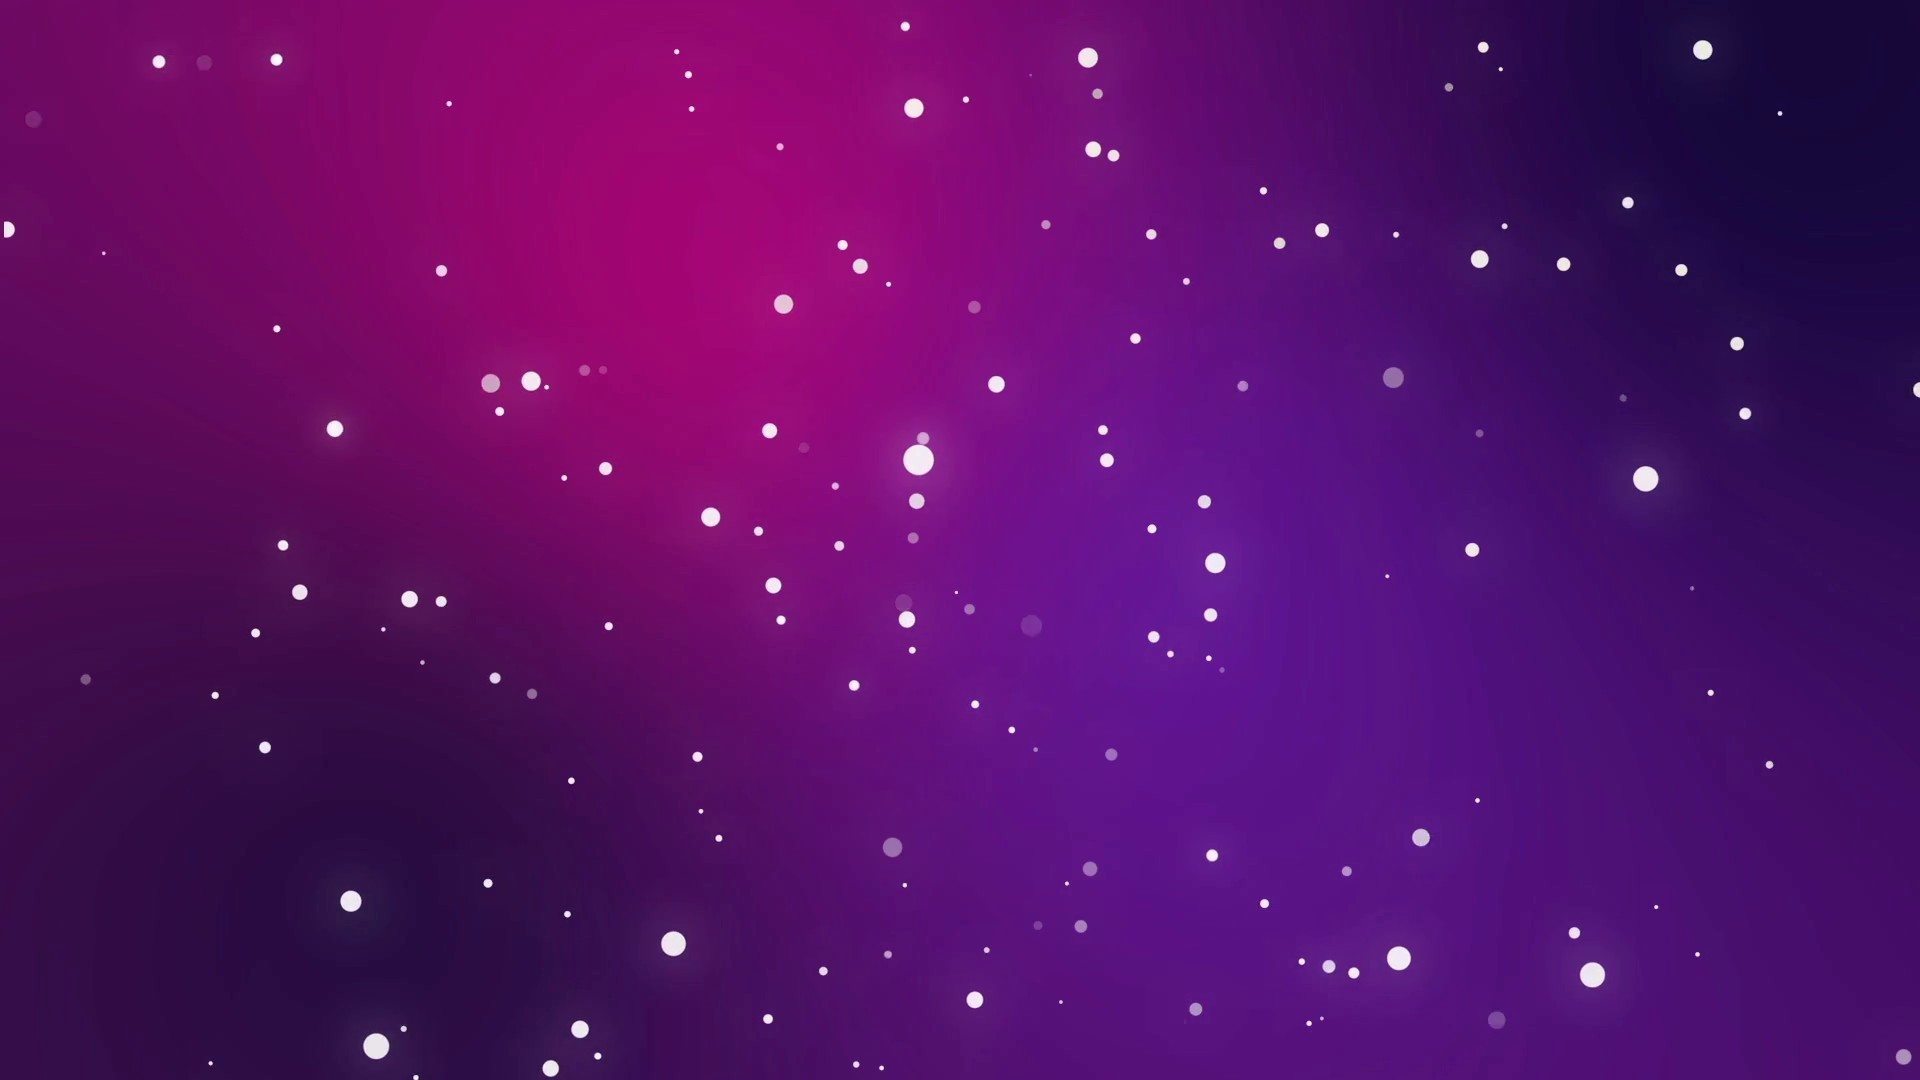 Nền hình nền sao hồng và tím (49+ hình ảnh) - Pink and Purple Star backgrounds (49+ pictures): Nền hình nền sao hồng và tím là sự kết hợp tuyệt vời giữa sự mềm mại và thanh lịch. Với hơn 49 hình ảnh đẹp nhất, bạn sẽ tìm thấy lựa chọn hoàn hảo cho các thiết kế của mình.